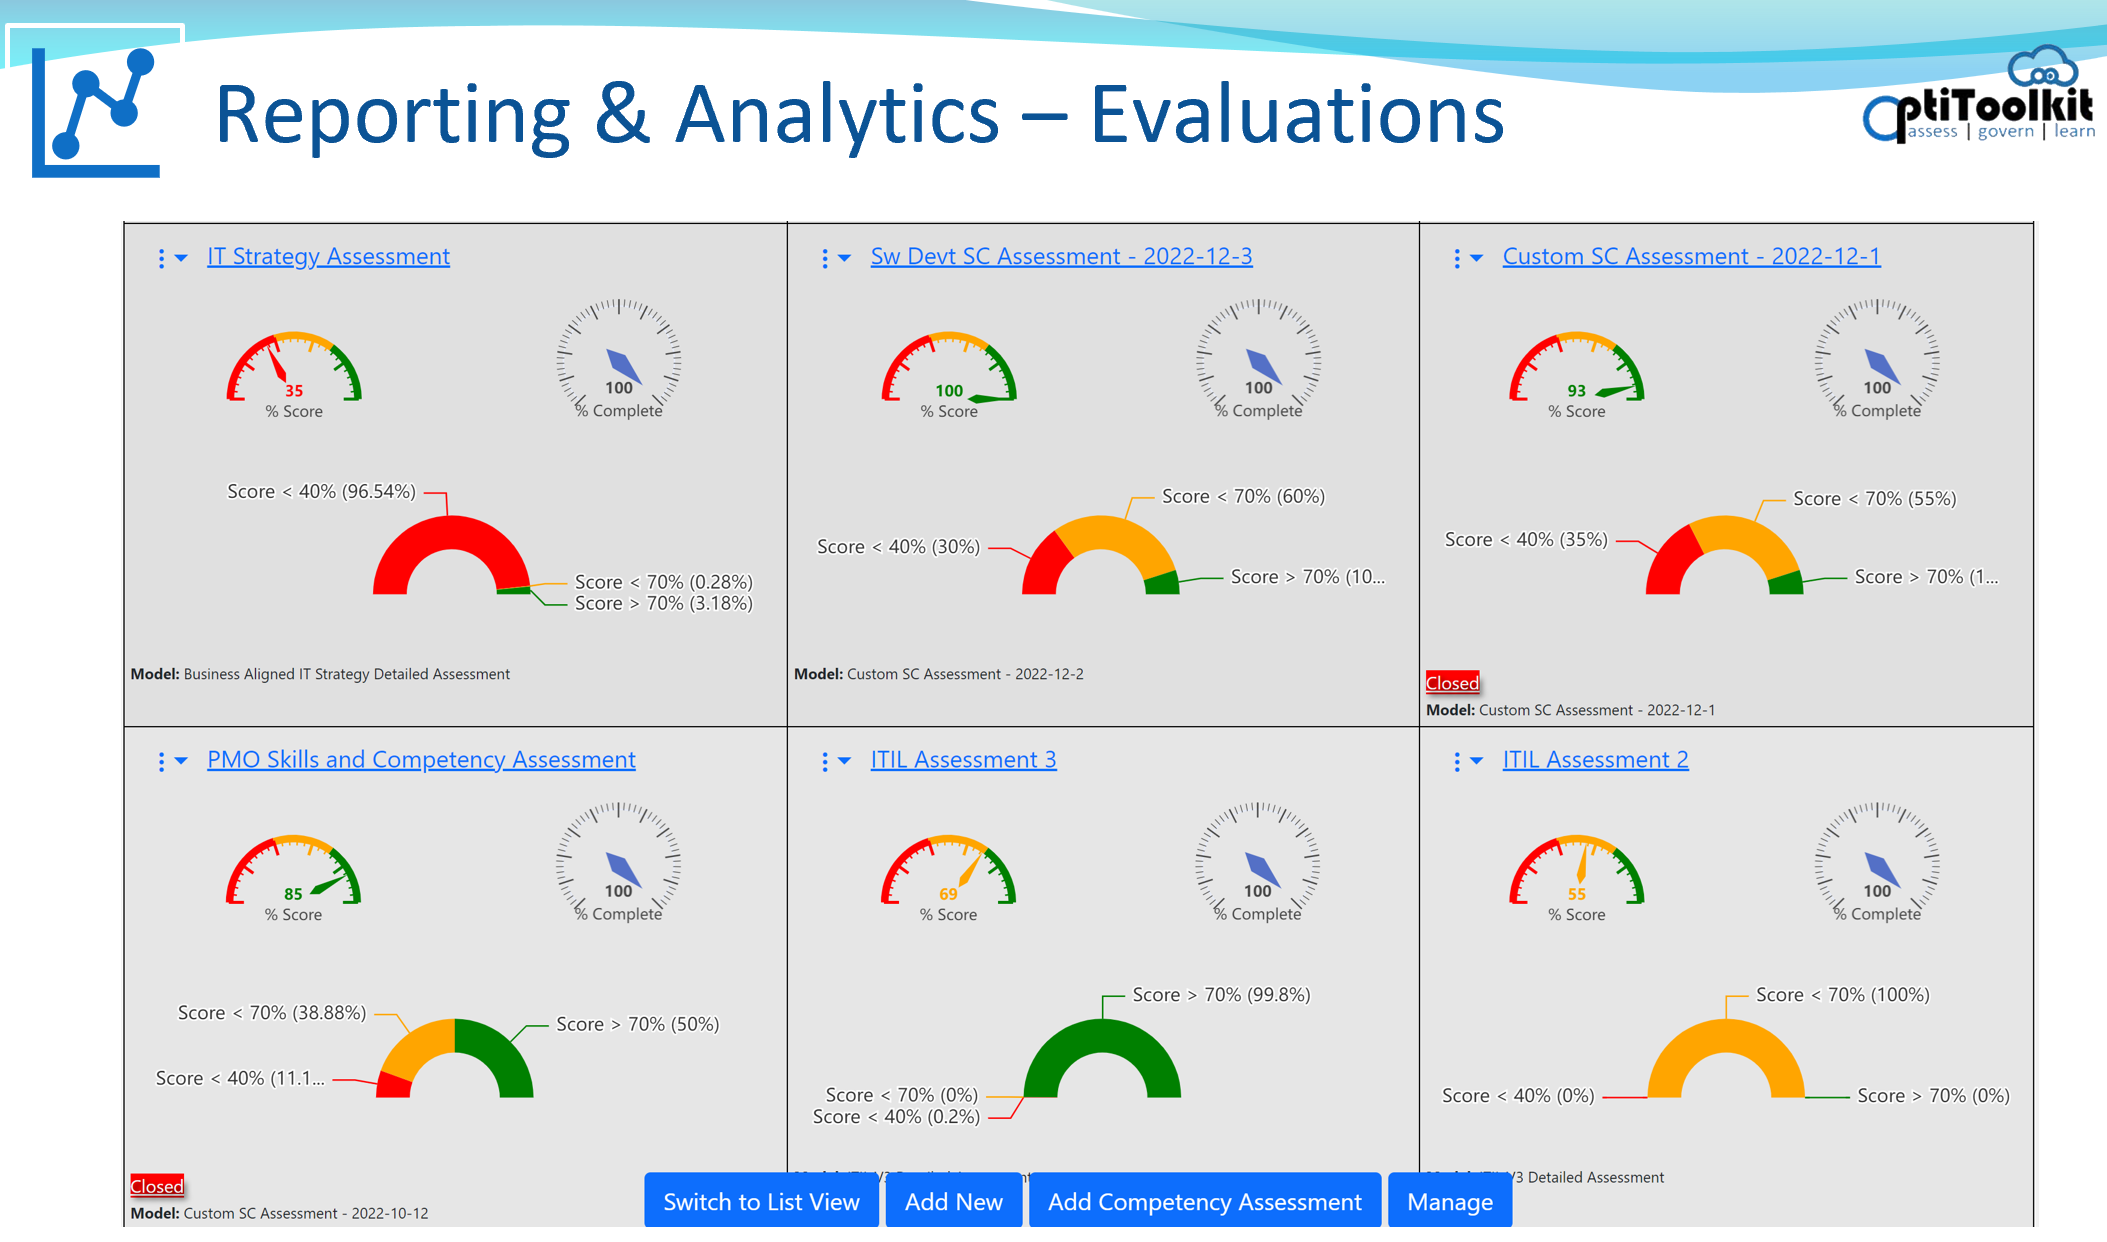 Analytics - Evaluations